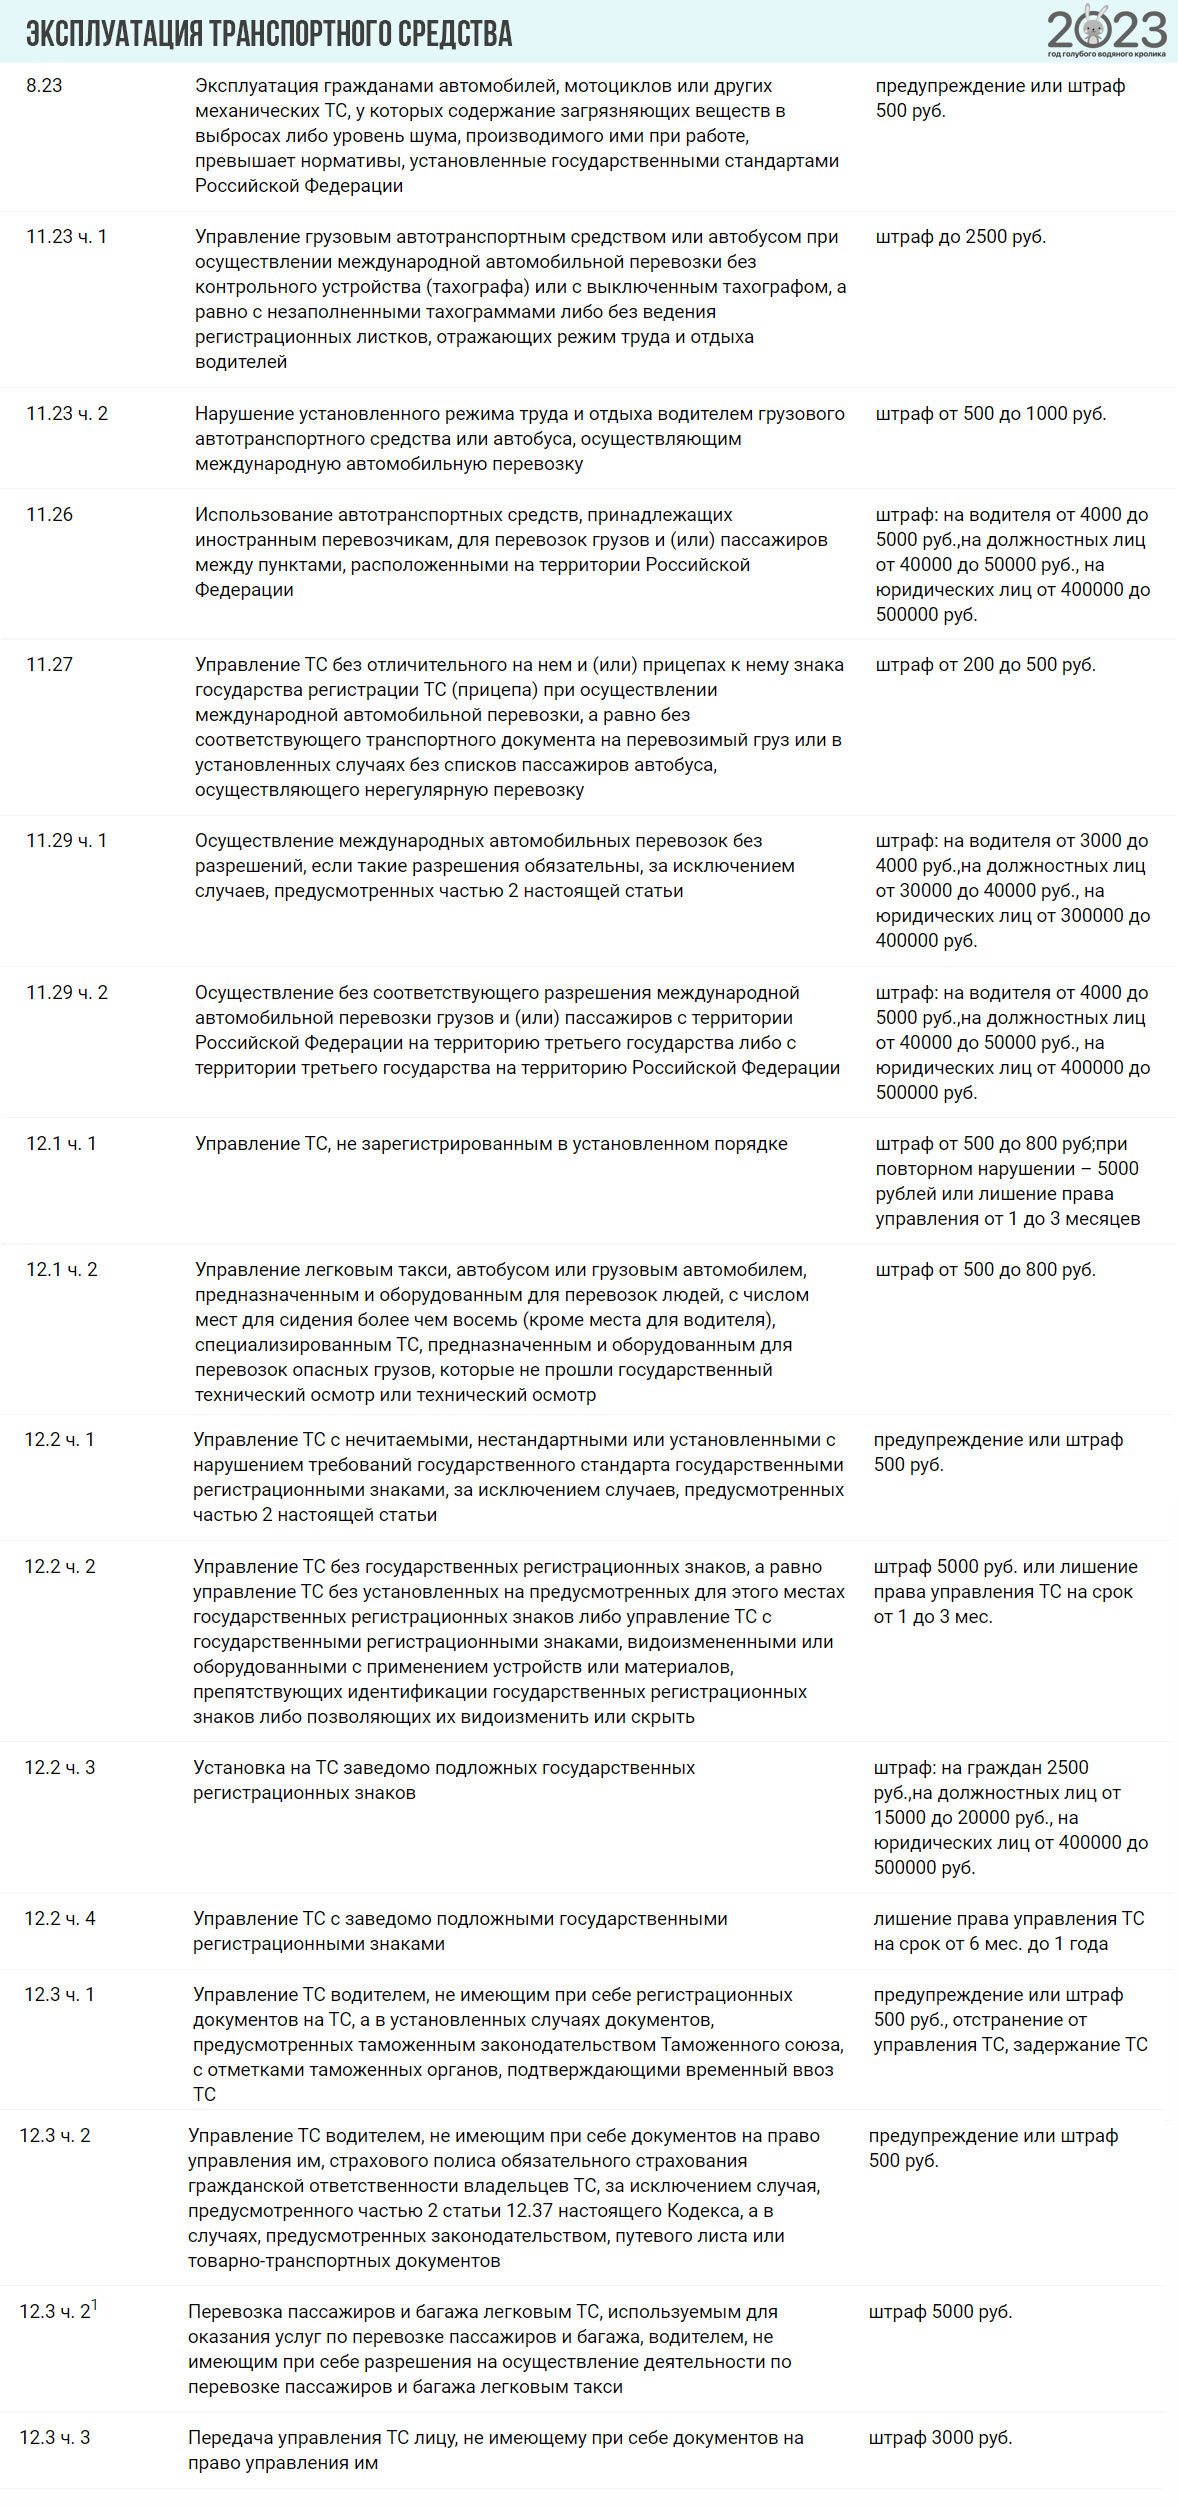 Таблица штрафов из блока "Эксплуатация ТС"